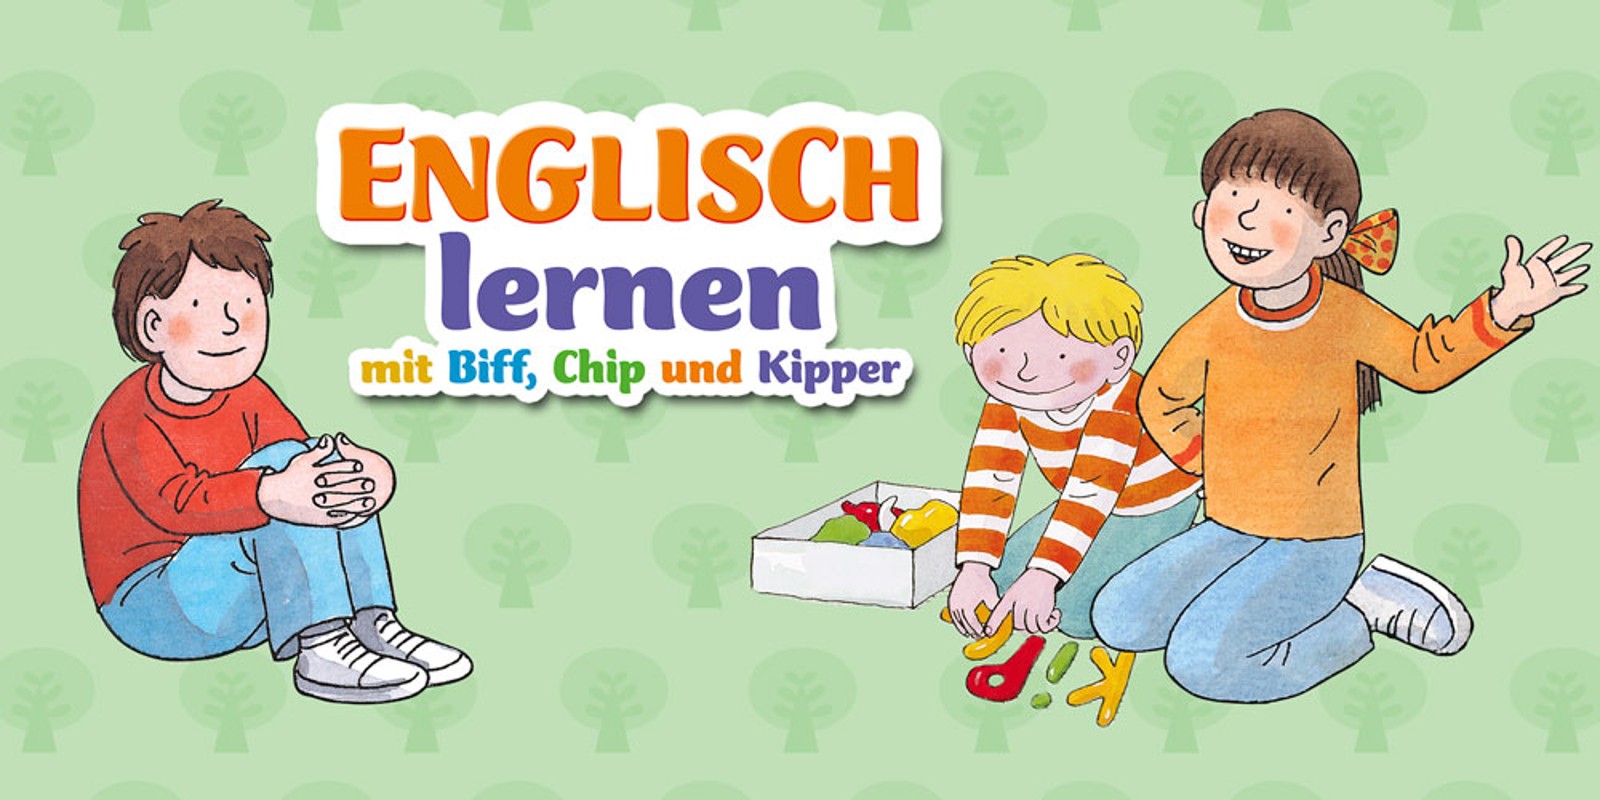 Englisch lernen mit Biff, Chip und Kipper